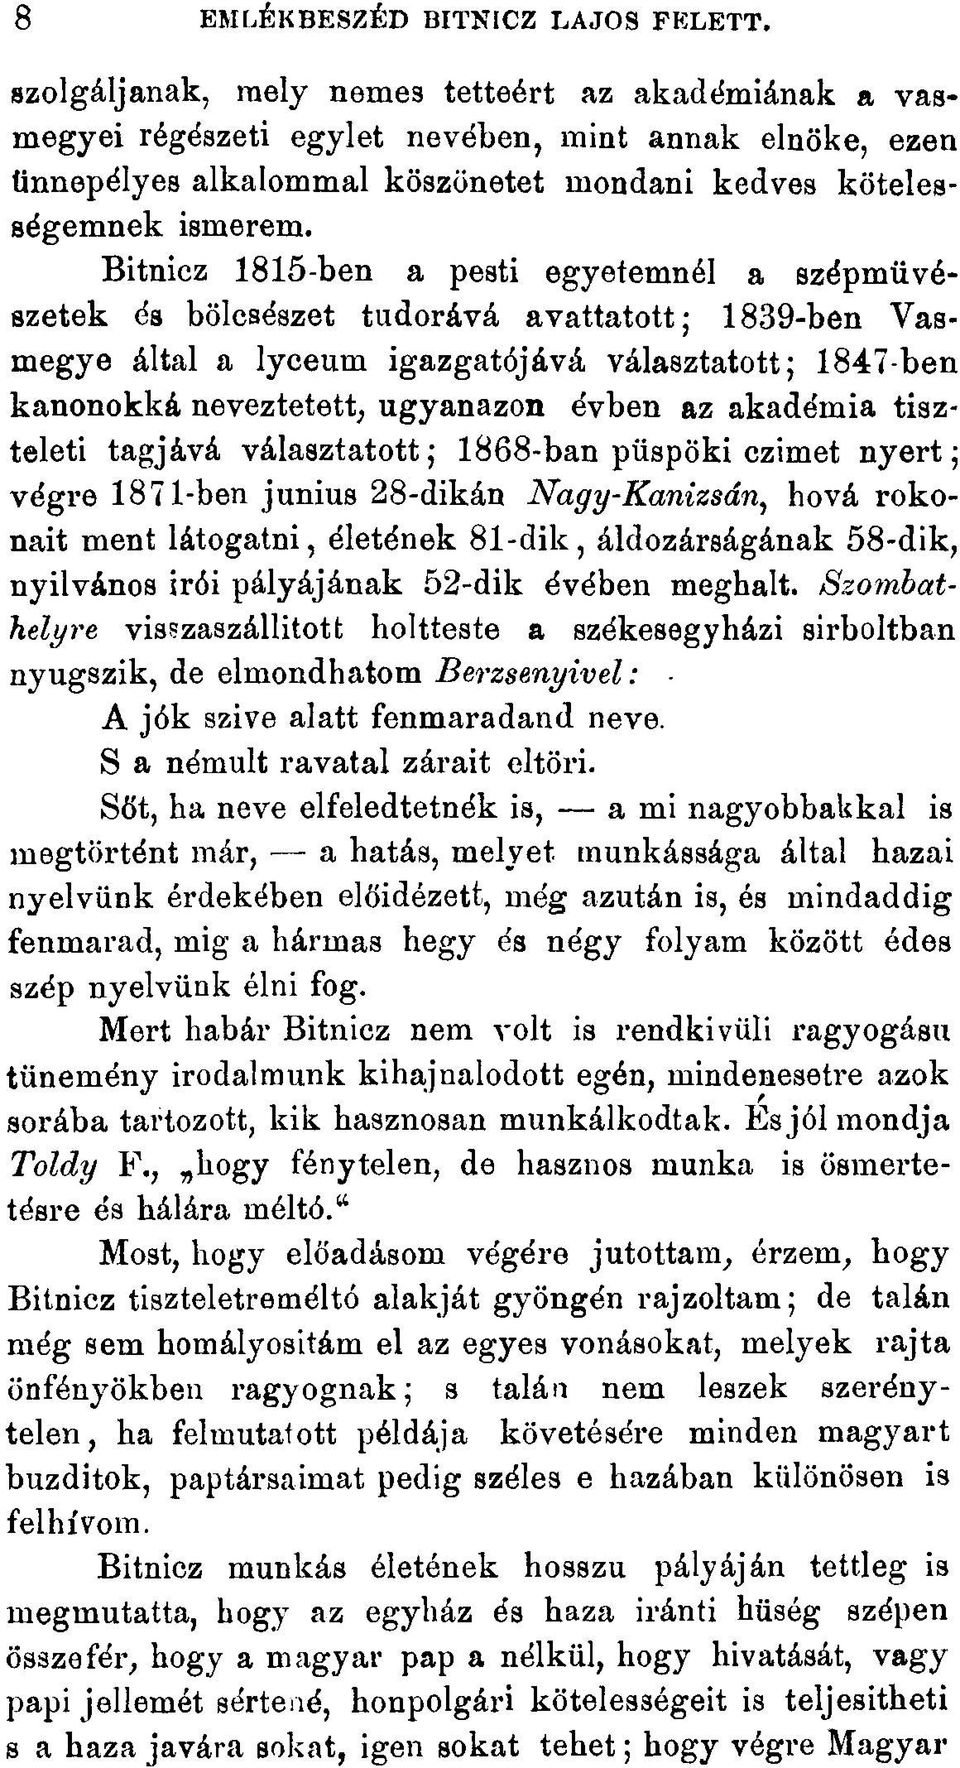 Bitnicz 1815-ben a pesti egyetemnél a szépmüvészetek és bölcsészet tudorává avattatott; 1839-ben Vasmegye által a lyceum igazgatójává választatott; 1847-ben kanonokká neveztetett, ugyanazon évben az